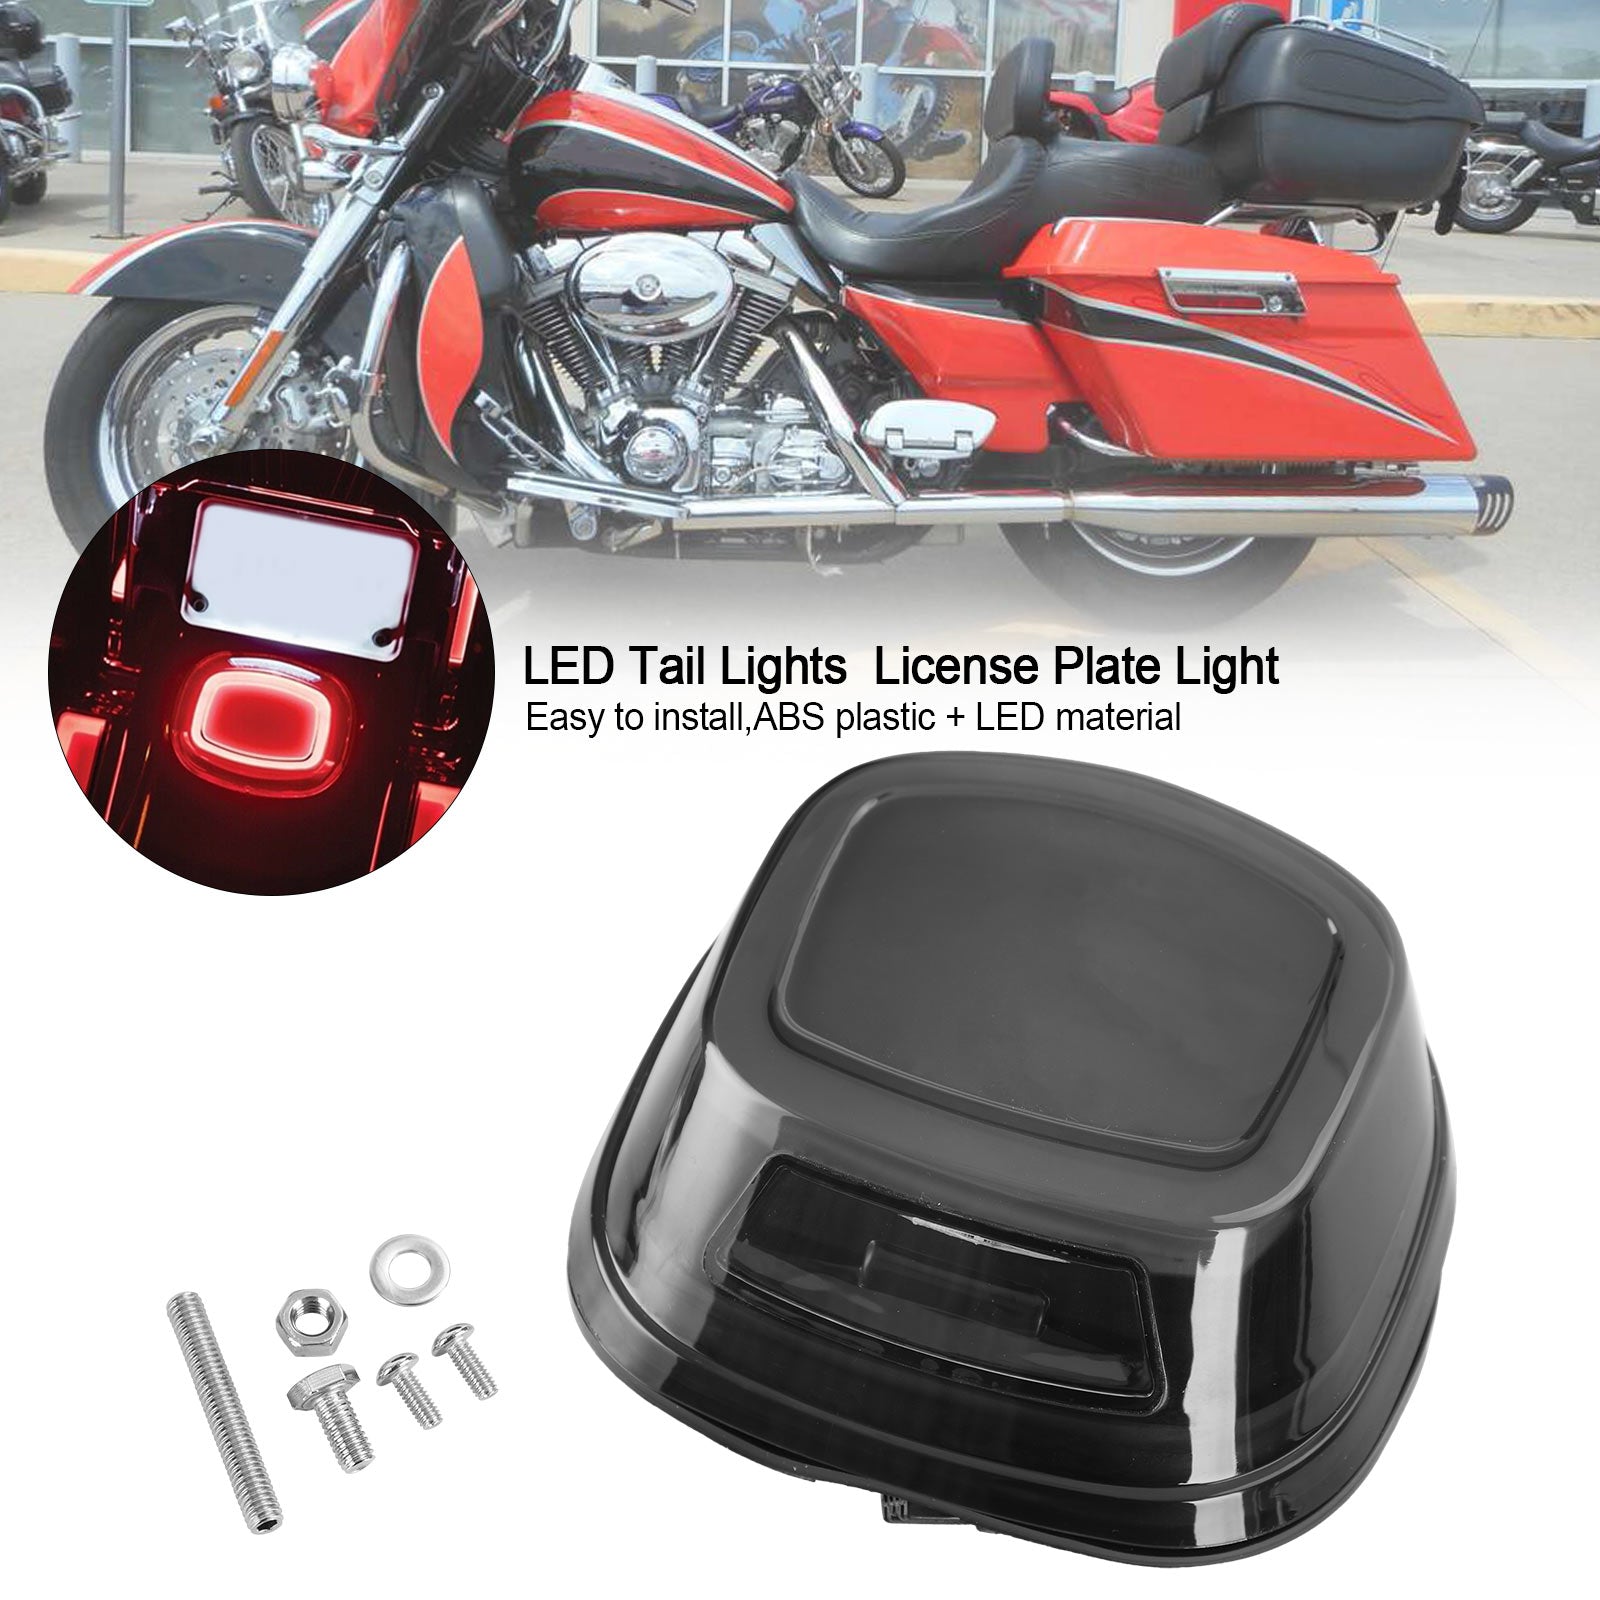 LED-Rücklichter, Kennzeichenbeleuchtung für Touring Softail Dyna Sportster ab 99, generisch